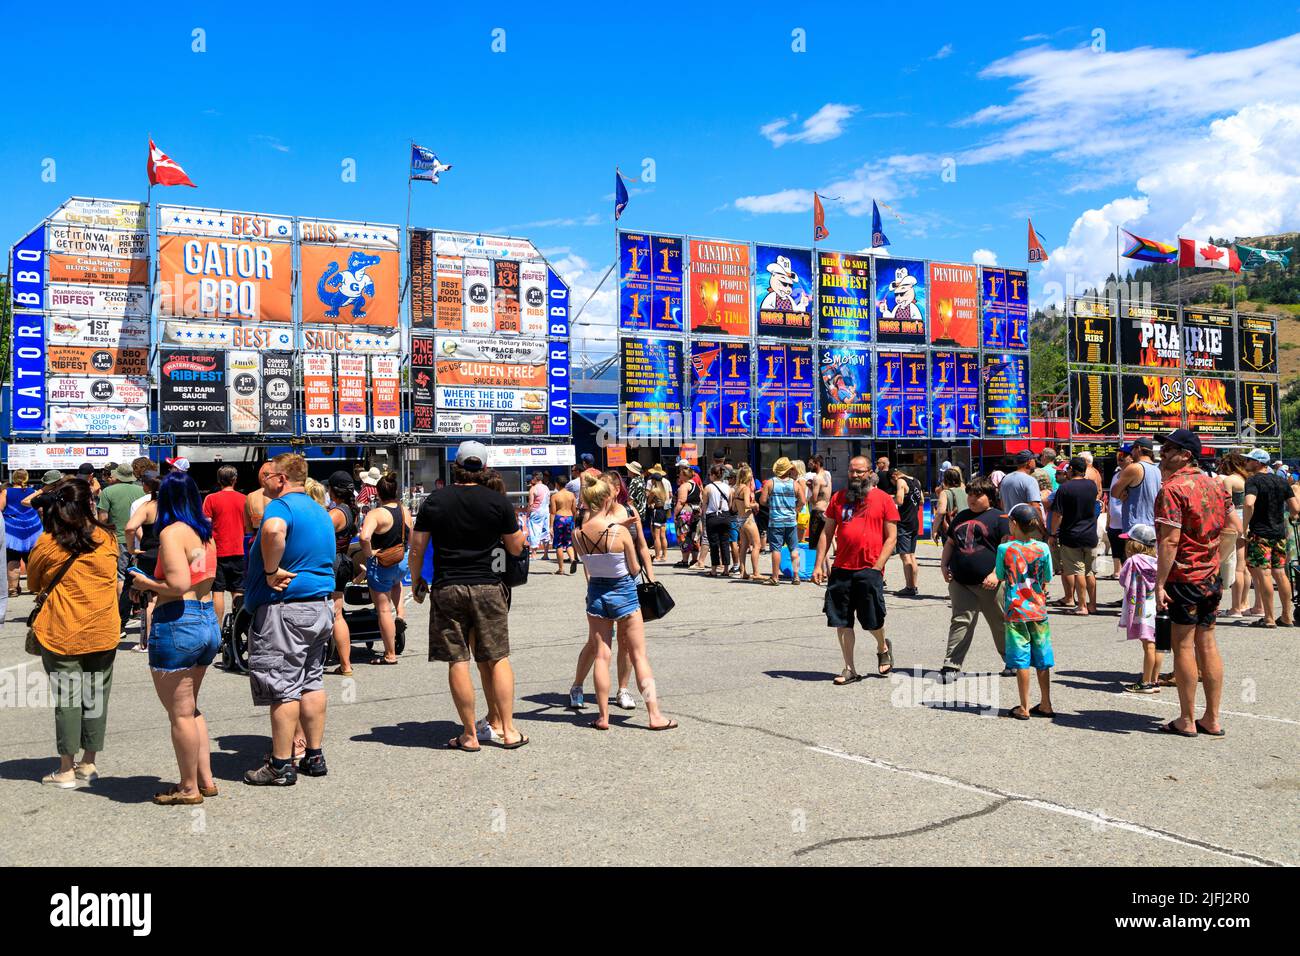 Penticton, Colombie-Britannique, Canada - 30 juin 2022 : des foules de gens au Festival des côtes de Penticton où des équipes de barbecue de partout au Canada se disputent l'été Banque D'Images